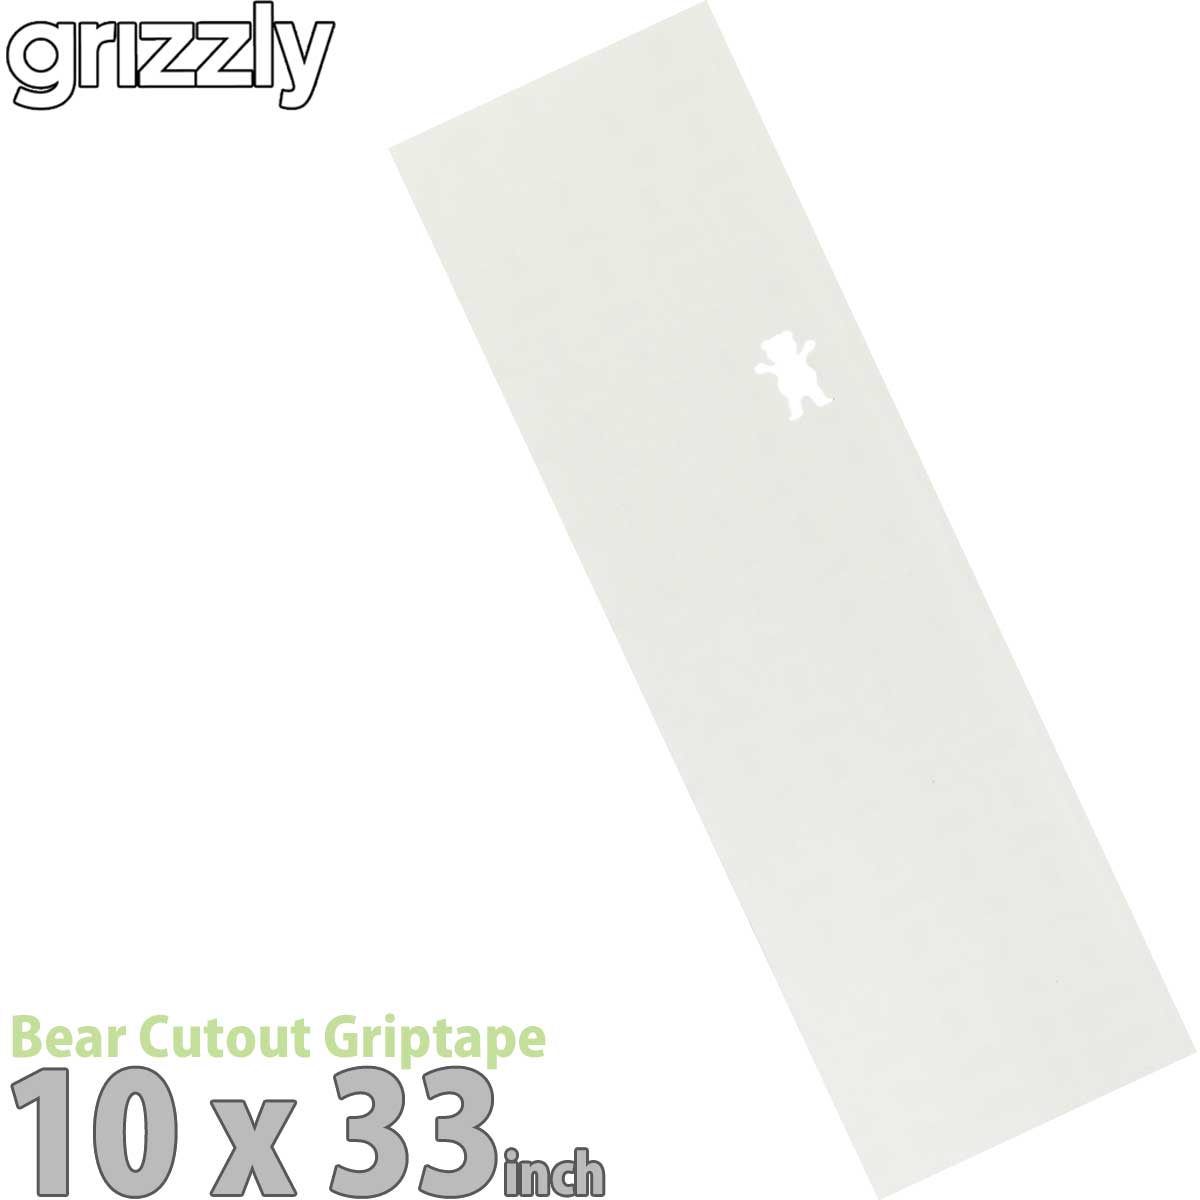 グリズリー デッキテープ ベアカットクリア 10インチ 透明 Grizzly Bear Cutout Griptape Regular 10inch レギュラー 右クマ クリアホワイト グリップテープ スケボー スケートボード パーツ ザラザラ 滑り止め 国内正規品